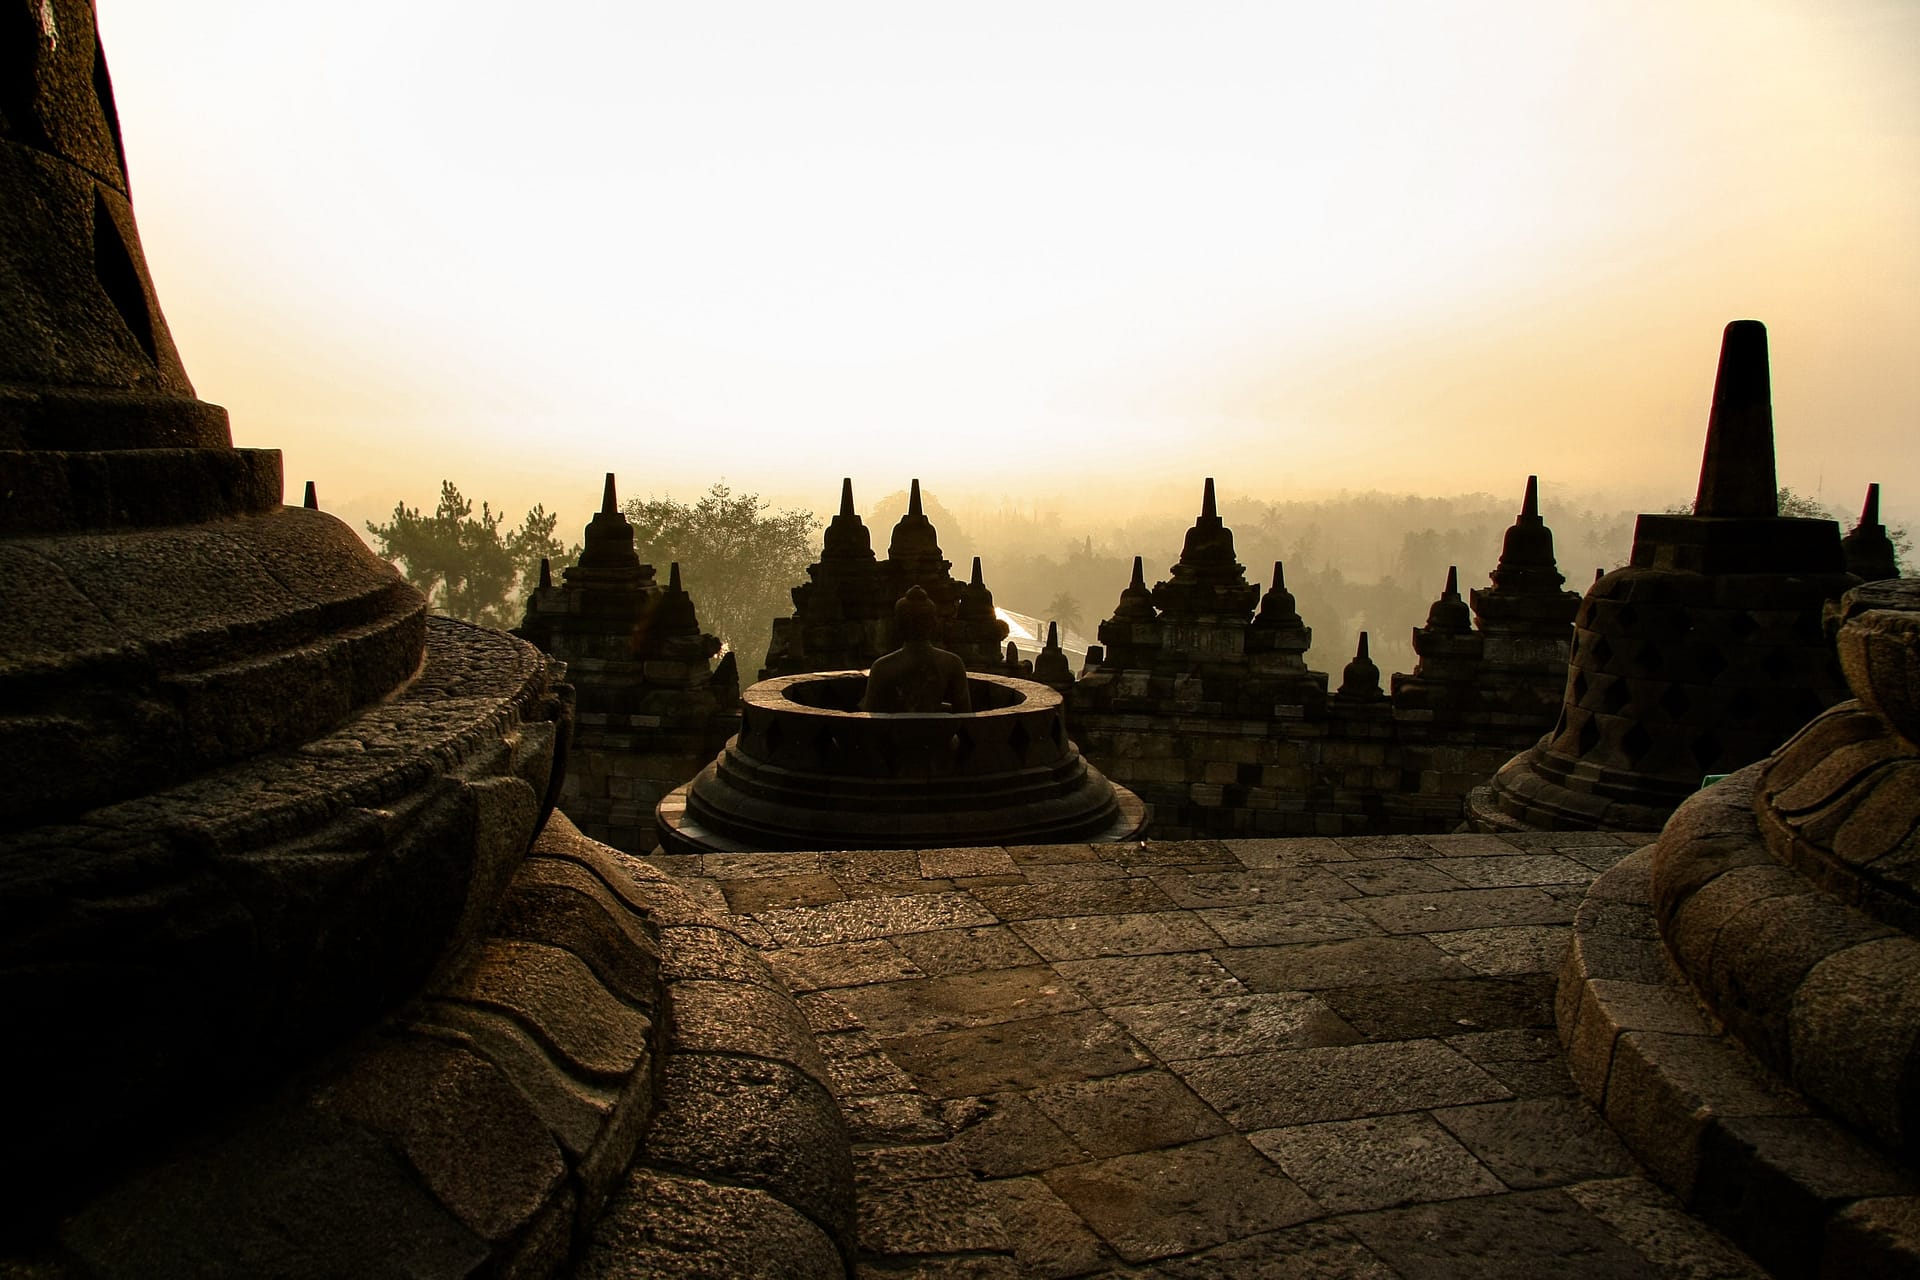 Borobudur in Java